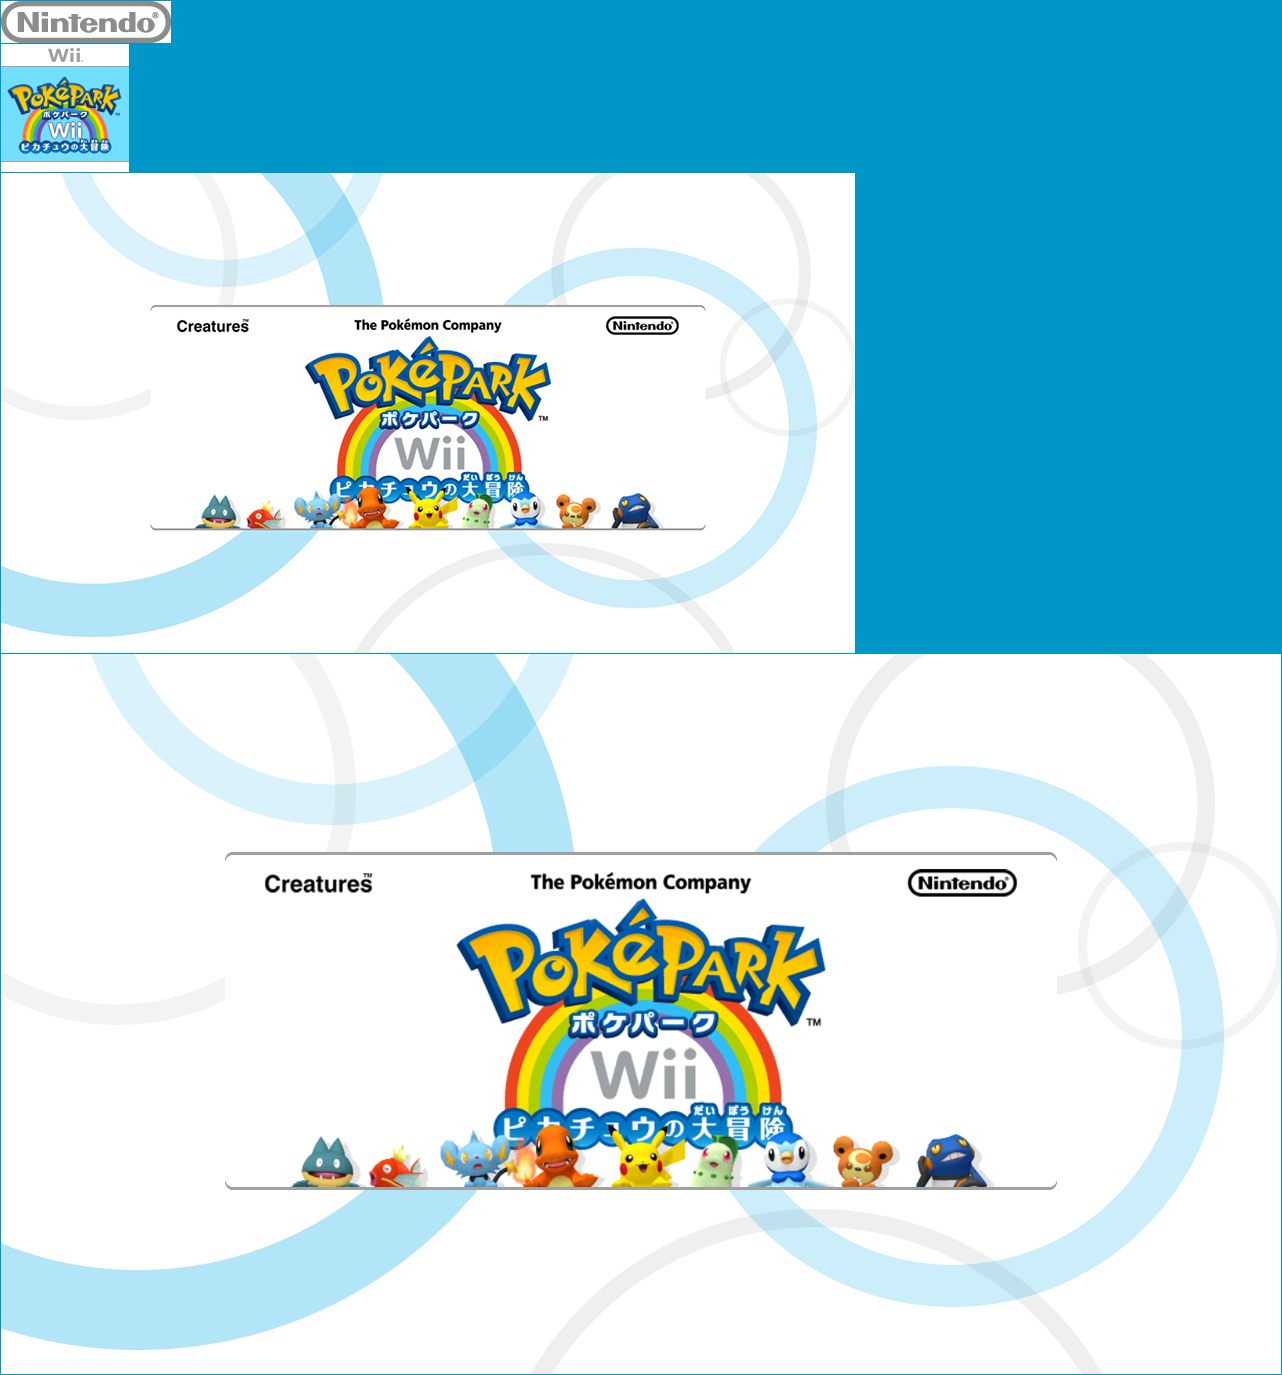 PokéPark Wii: Pikachu no Daibōken